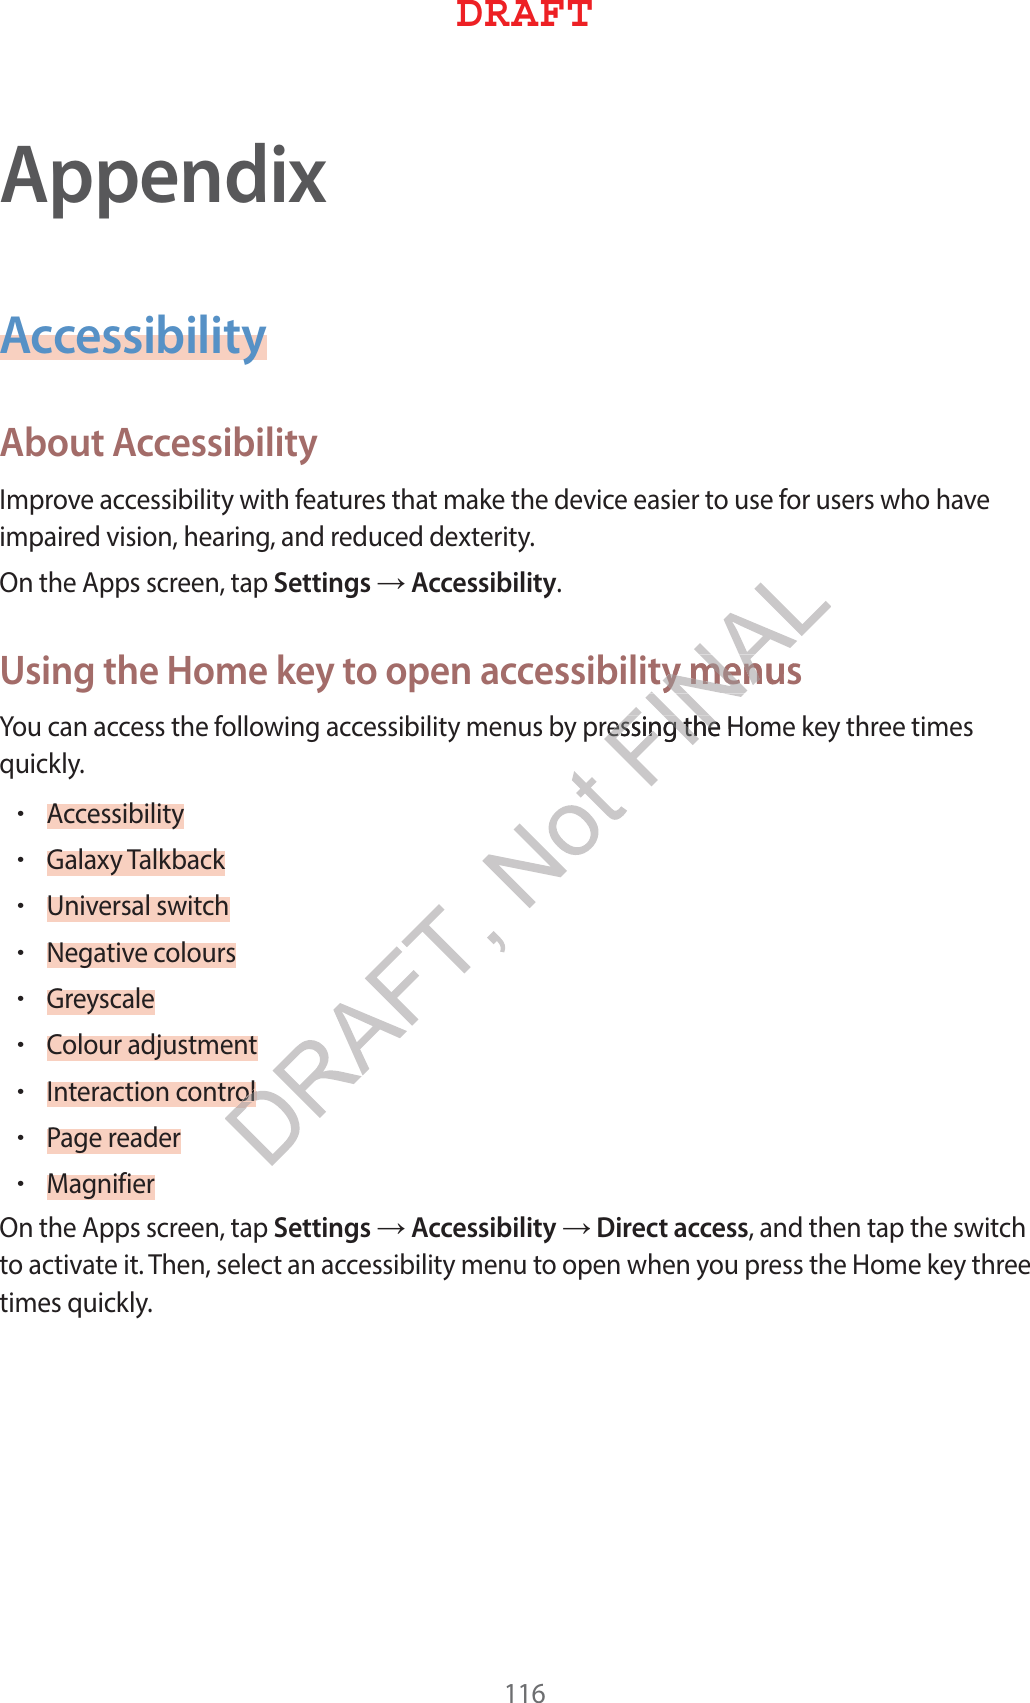 AppendixAccessibilityAbout Accessibility*NQSPWFBDDFTTJCJMJUZXJUIGFBUVSFTUIBUNBLFUIFEFWJDFFBTJFSUPVTFGPSVTFSTXIPIBWFJNQBJSFEWJTJPOIFBSJOHBOESFEVDFEEFYUFSJUZ0OUIF&quot;QQTTDSFFOUBQSettingsĺAccessibilityUsing the Home key to open accessibility menus:PVDBOBDDFTTUIFGPMMPXJOHBDDFTTJCJMJUZNFOVTCZQSFTTJOHUIF)PNFLFZUISFFUJNFTRVJDLMZr&quot;DDFTTJCJMJUZr(BMBYZ5BMLCBDLr6OJWFSTBMTXJUDIr/FHBUJWFDPMPVSTr(SFZTDBMFr$PMPVSBEKVTUNFOUr*OUFSBDUJPODPOUSPMr1BHFSFBEFSr.BHOJGJFS0OUIF&quot;QQTTDSFFOUBQSettingsĺAccessibilityĺDirect accessBOEUIFOUBQUIFTXJUDIUPBDUJWBUFJU5IFOTFMFDUBOBDDFTTJCJMJUZNFOVUPPQFOXIFOZPVQSFTTUIF)PNFLFZUISFFUJNFTRVJDLMZ%3&quot;&apos;5Dty menusty menSFTTJOHUIF)SFTTJOHUIFPM